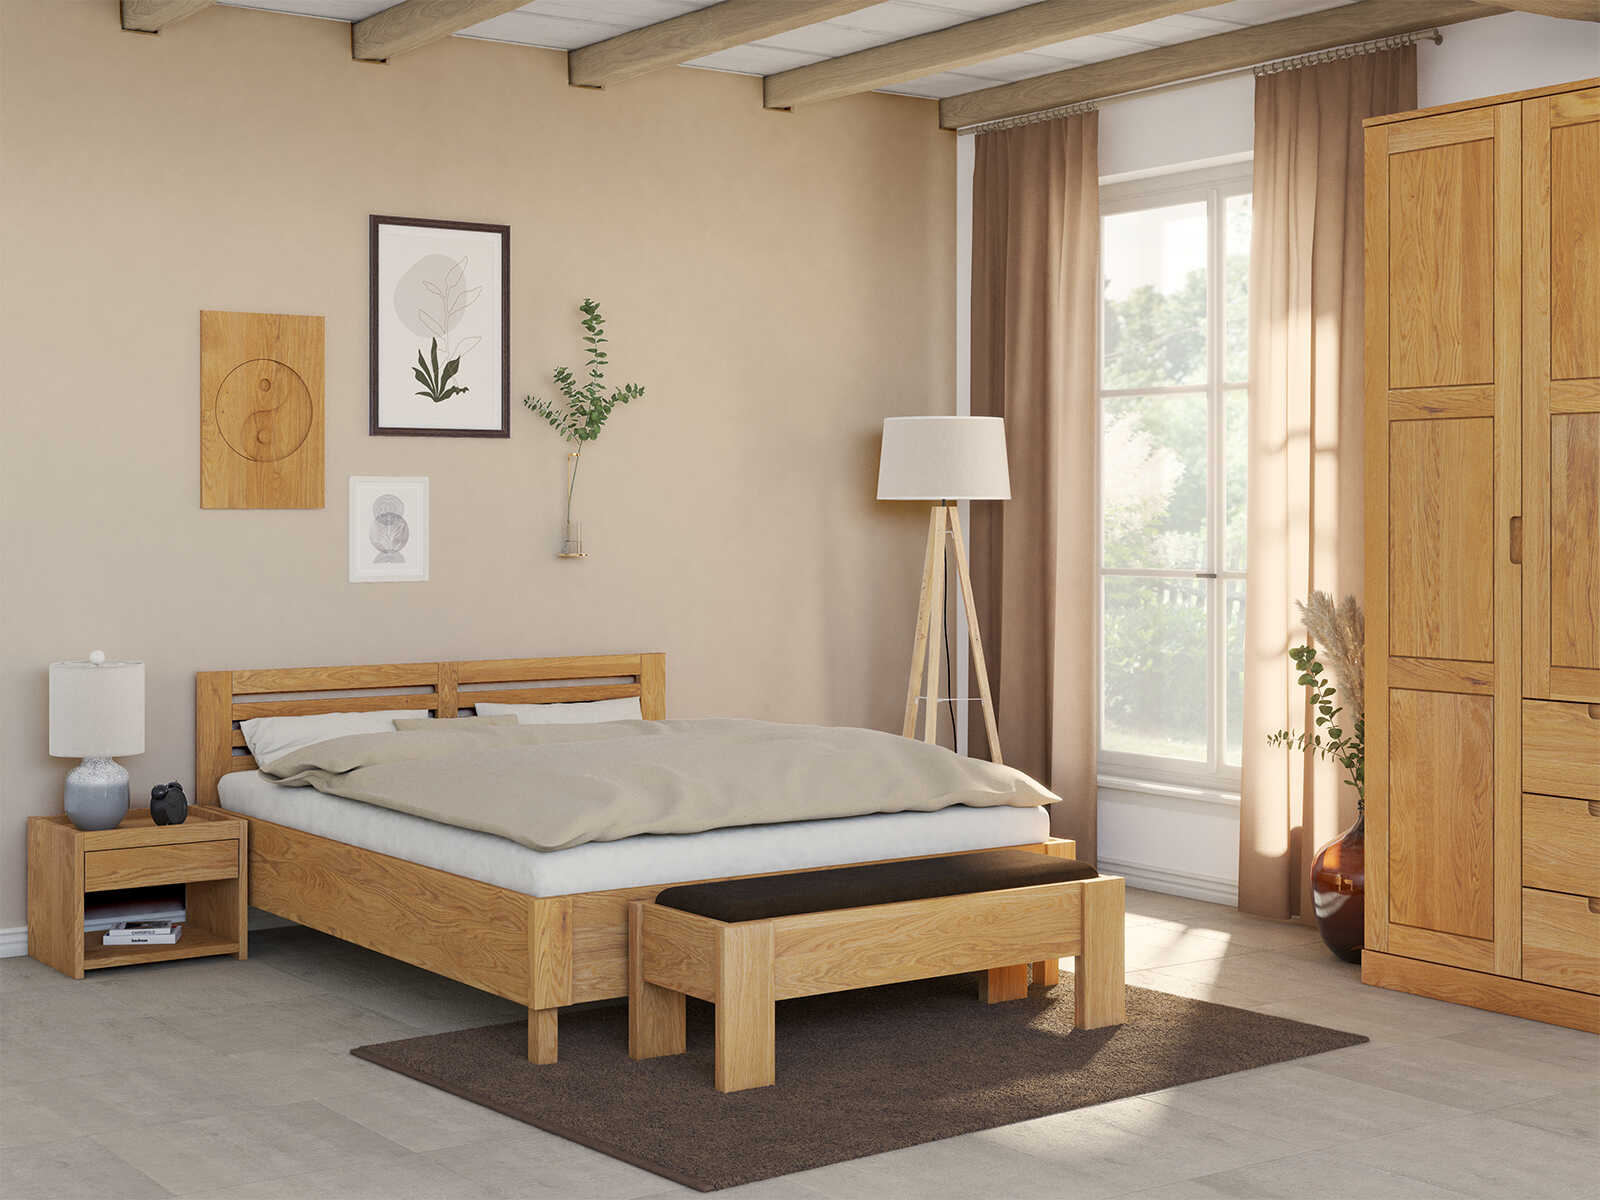 Schlafzimmer mit Eichenbett „Moritz“ in 180 x 200 cm